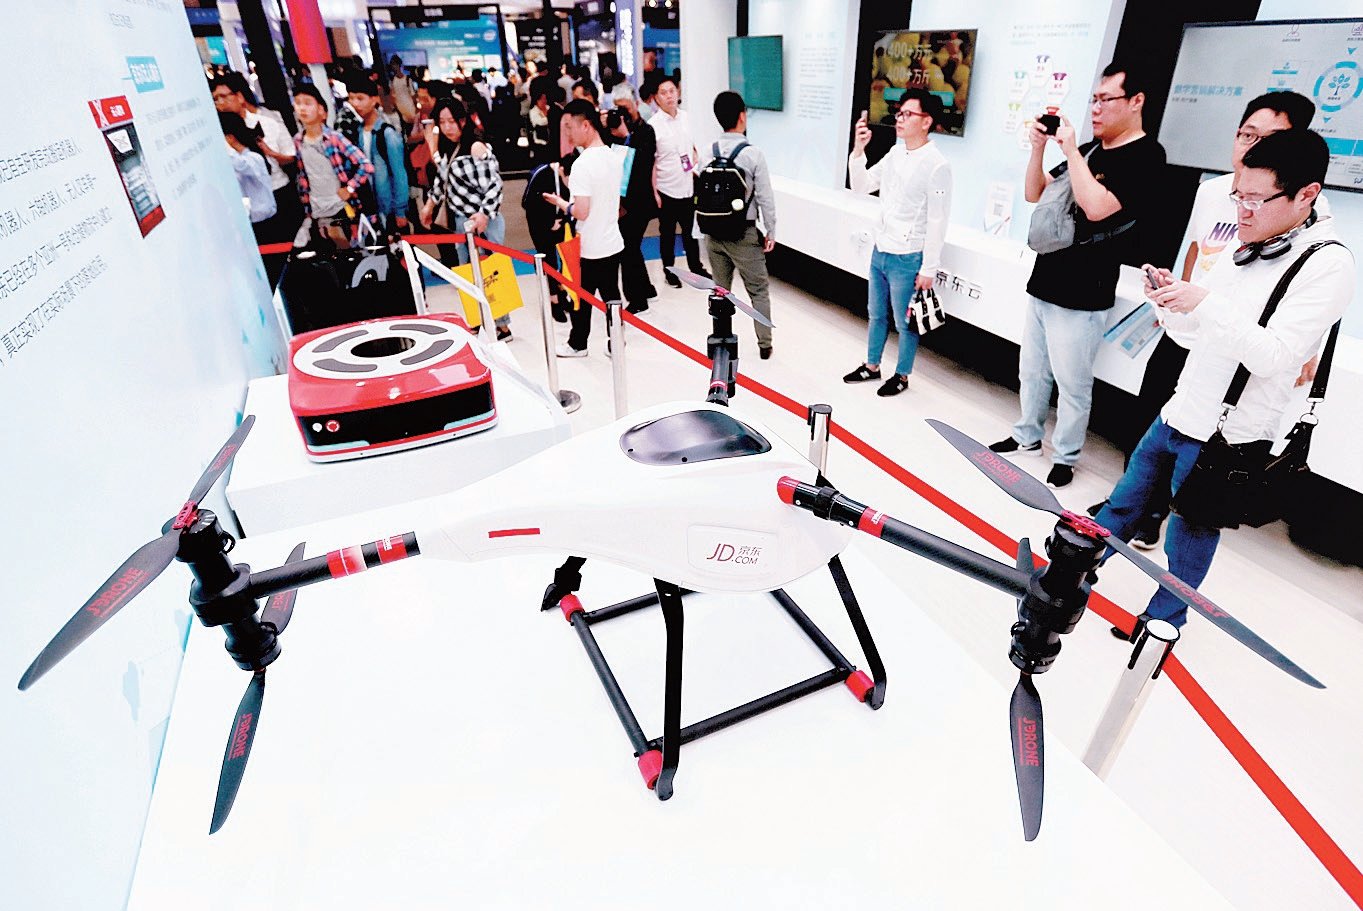 中国网购平台“京东”，在会展上展出一款送货无人机，吸引科技爱好者驻足拍照。